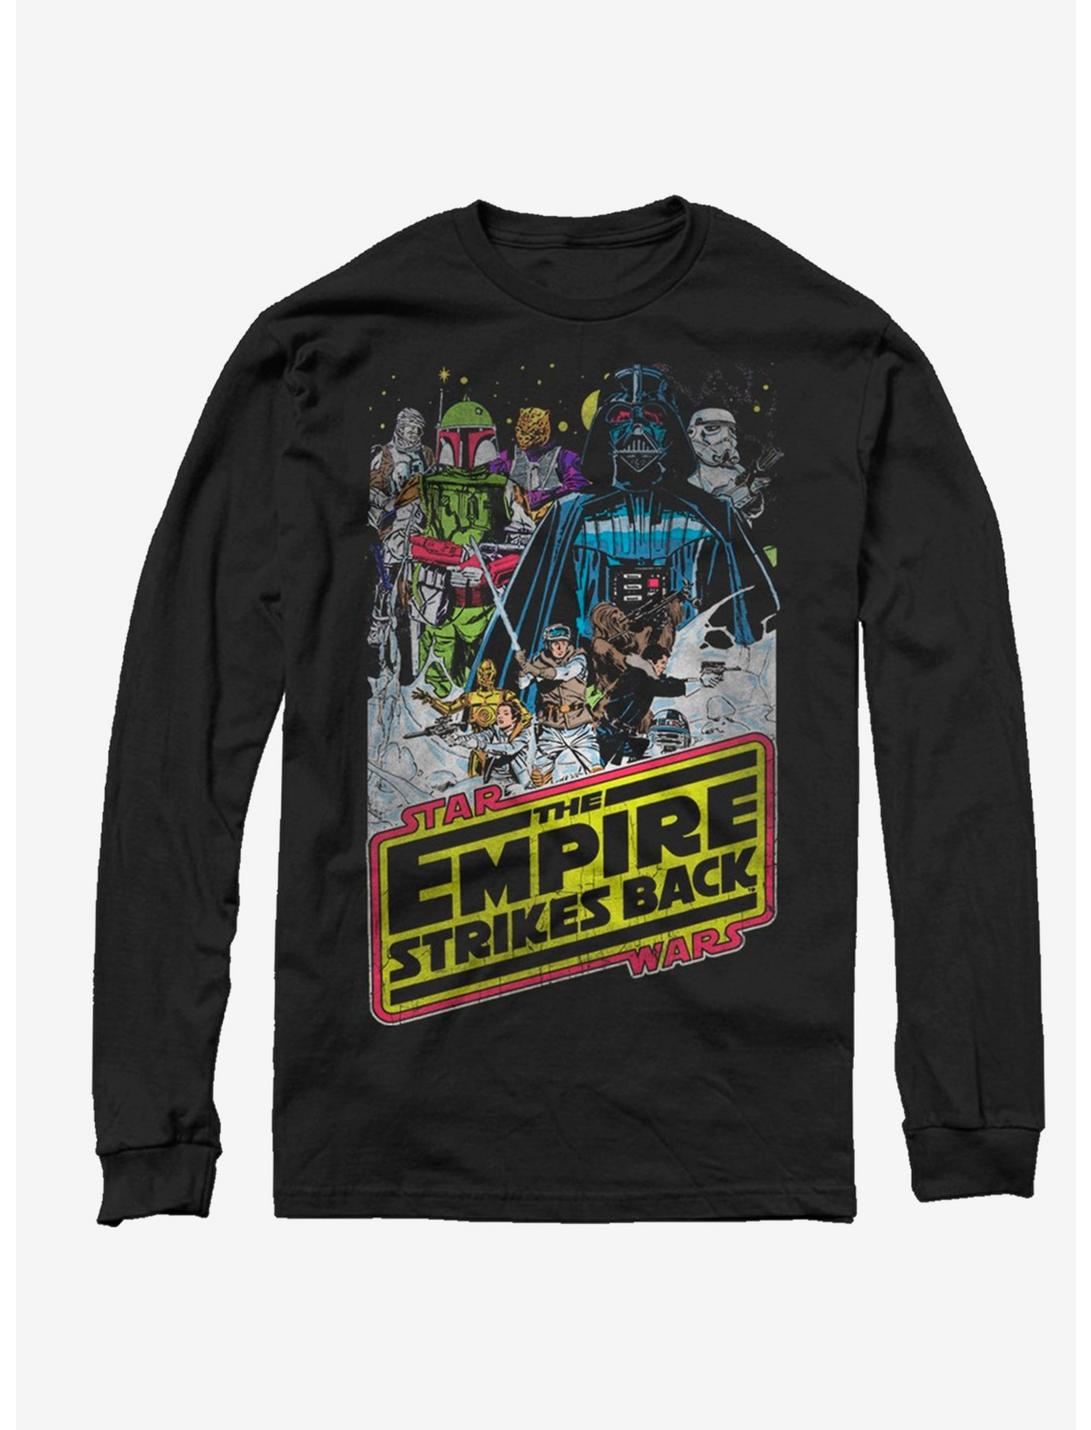 Star Wars Empires Hoth Long-Sleeve T-Shirt, BLACK, hi-res